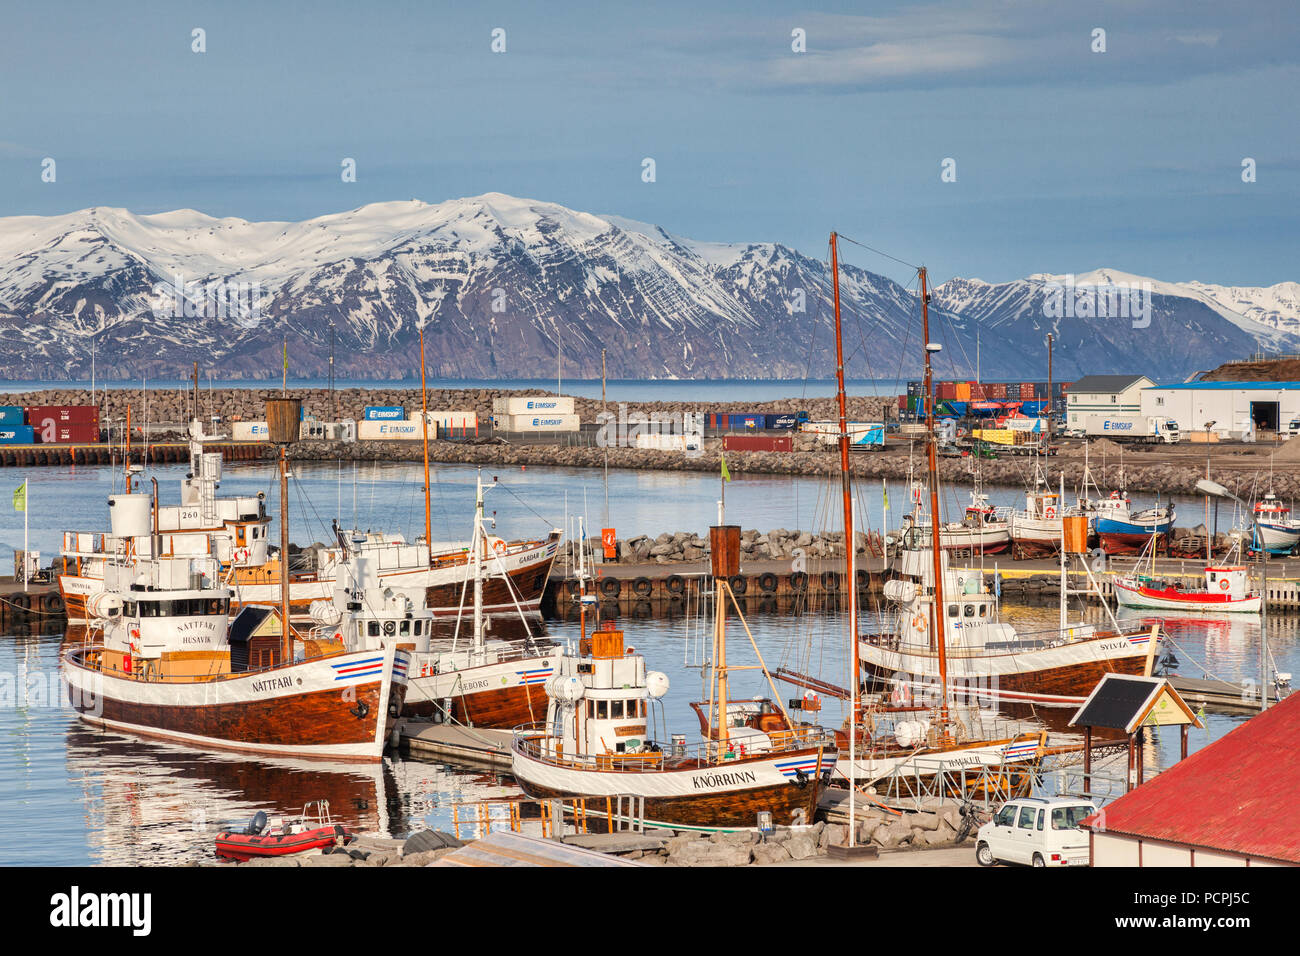 13 avril 2018 : Husavik, Nord de l'Islande - Baleines bateaux dans le port par un beau jour de printemps. Banque D'Images